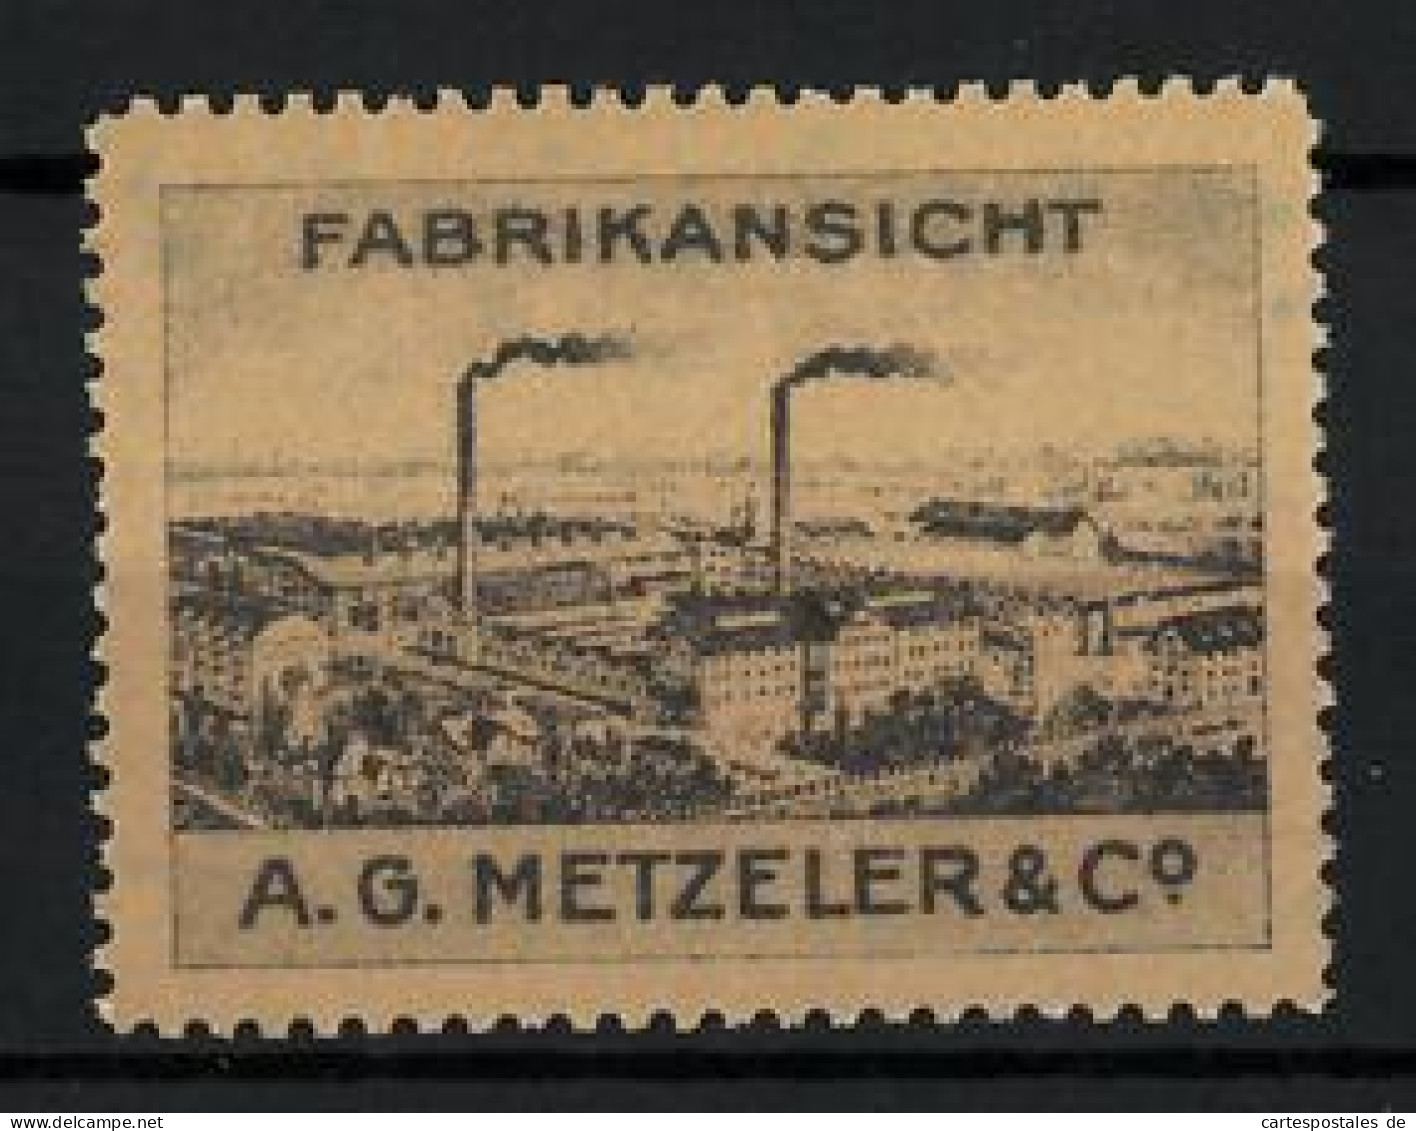 Reklamemarke A. G. Metzeler & Co., Fabrikansicht  - Cinderellas